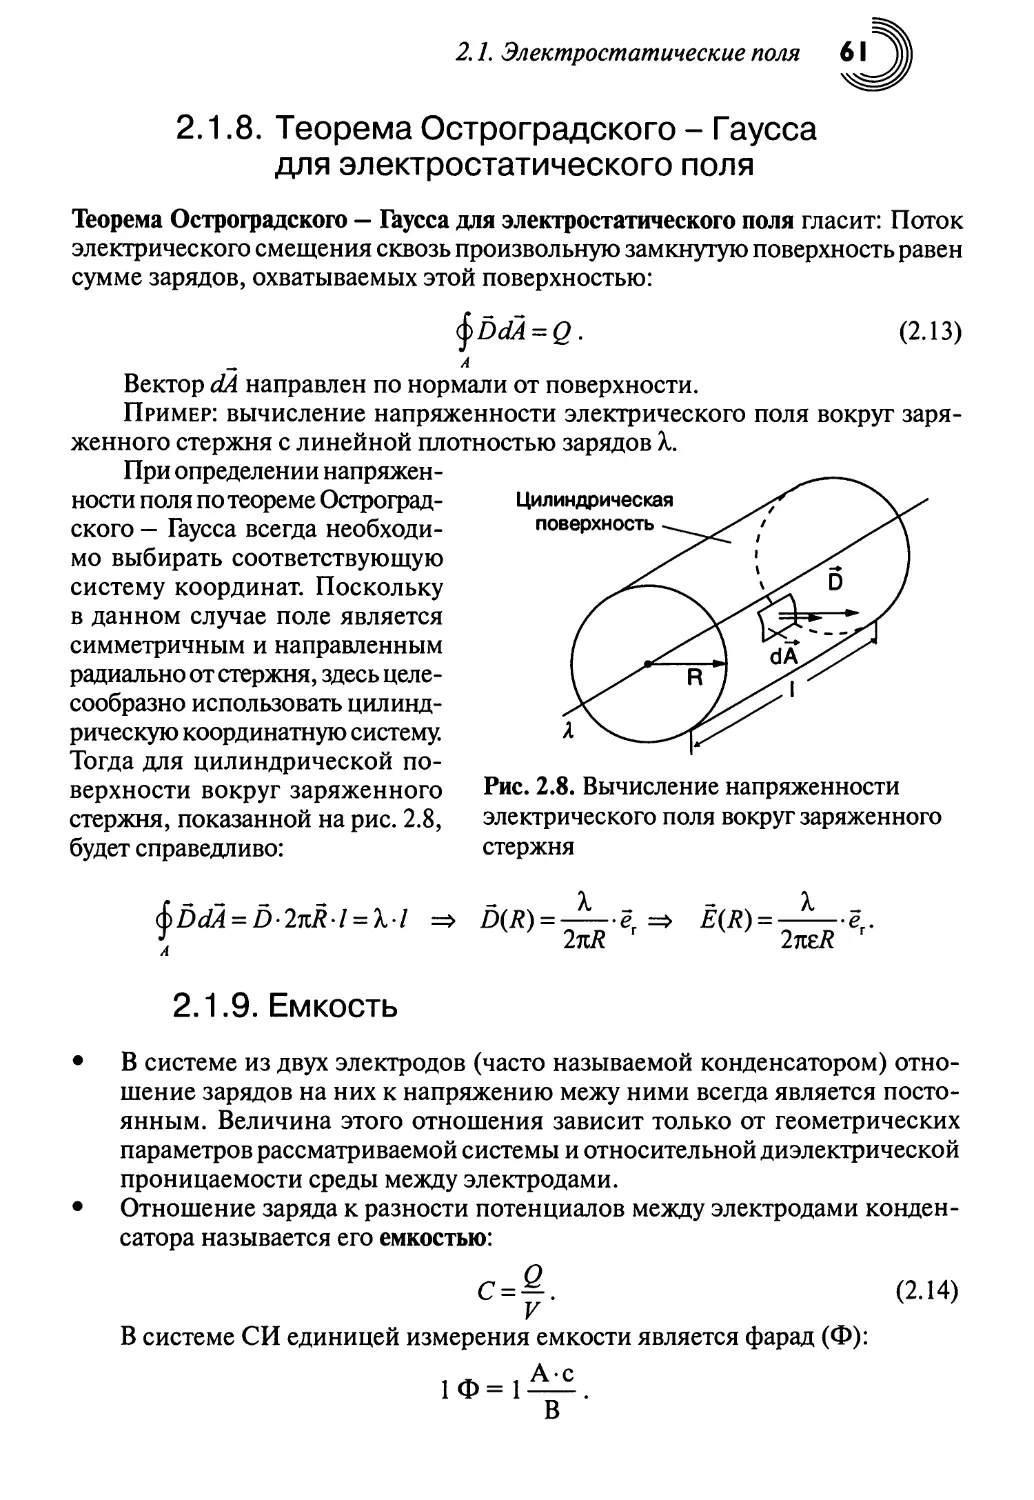 2.1.8. Теорема Остроградского — Гаусса для электростатического поля
2.1.9. Емкость